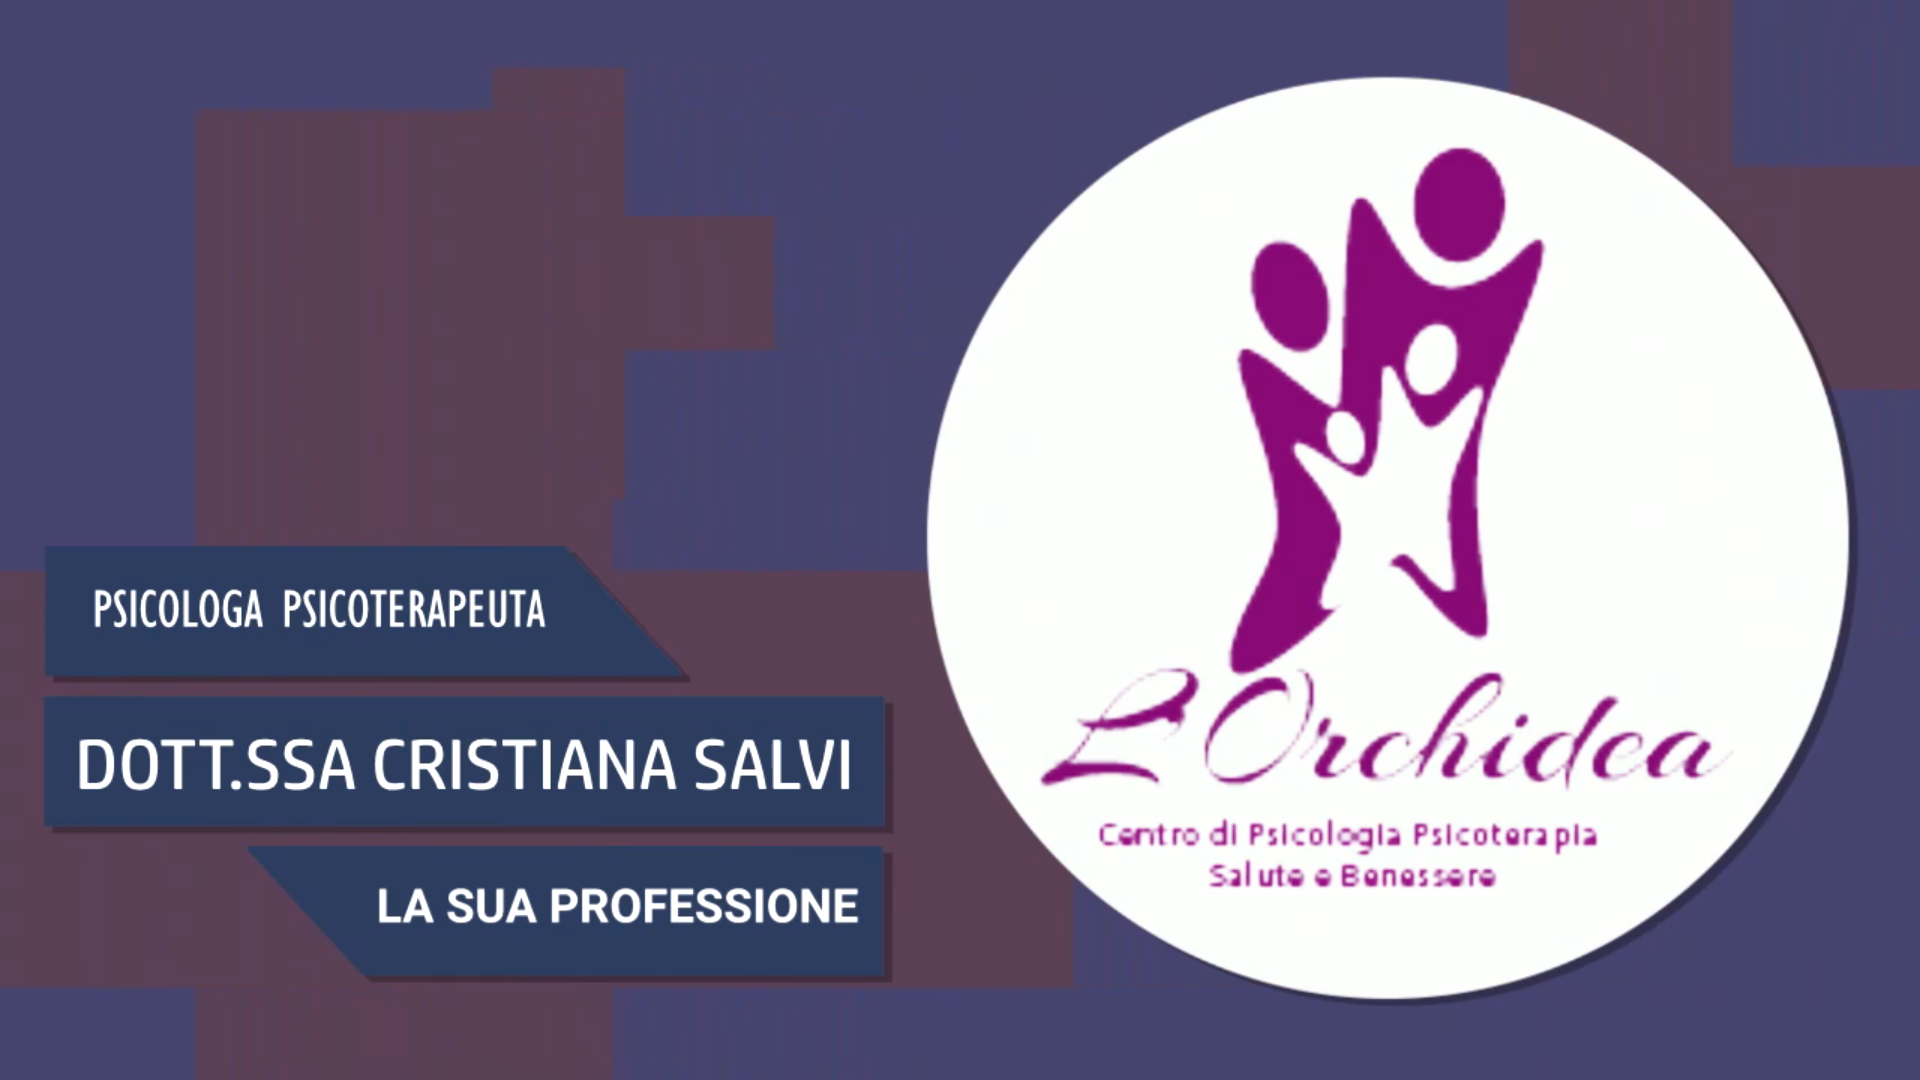 Intervista alla Dott.ssa Cristiana Salvi – La sua professione